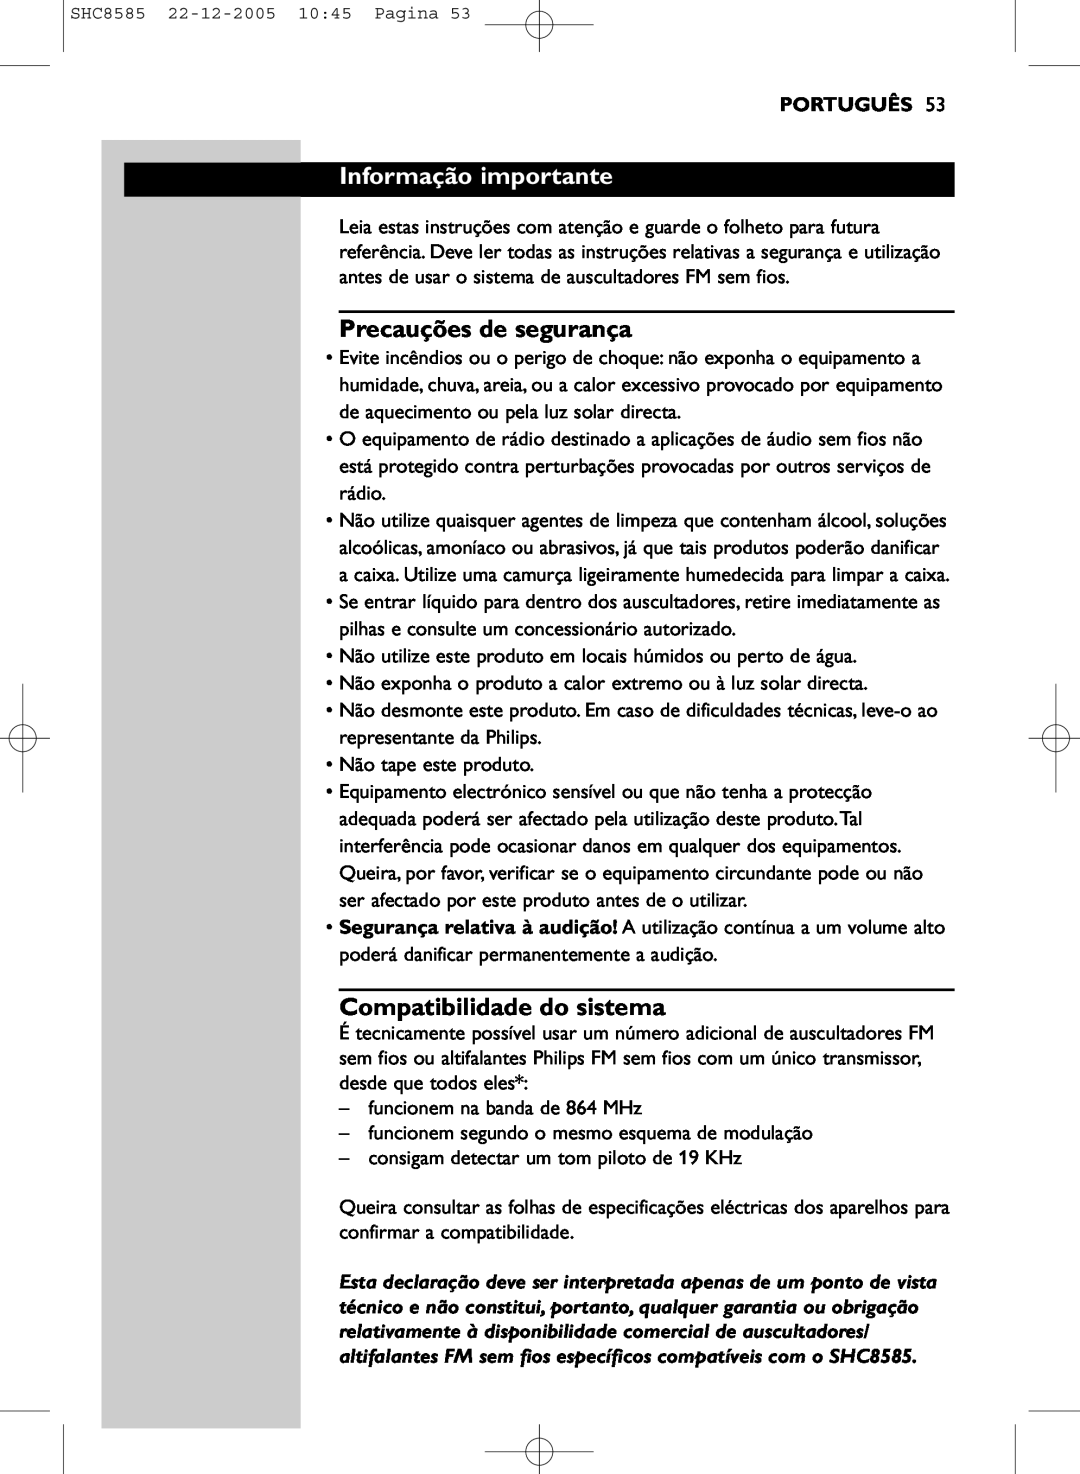 Philips SHC8585/05 manual Informação importante, Precauções de segurança, Compatibilidade do sistema, Português 